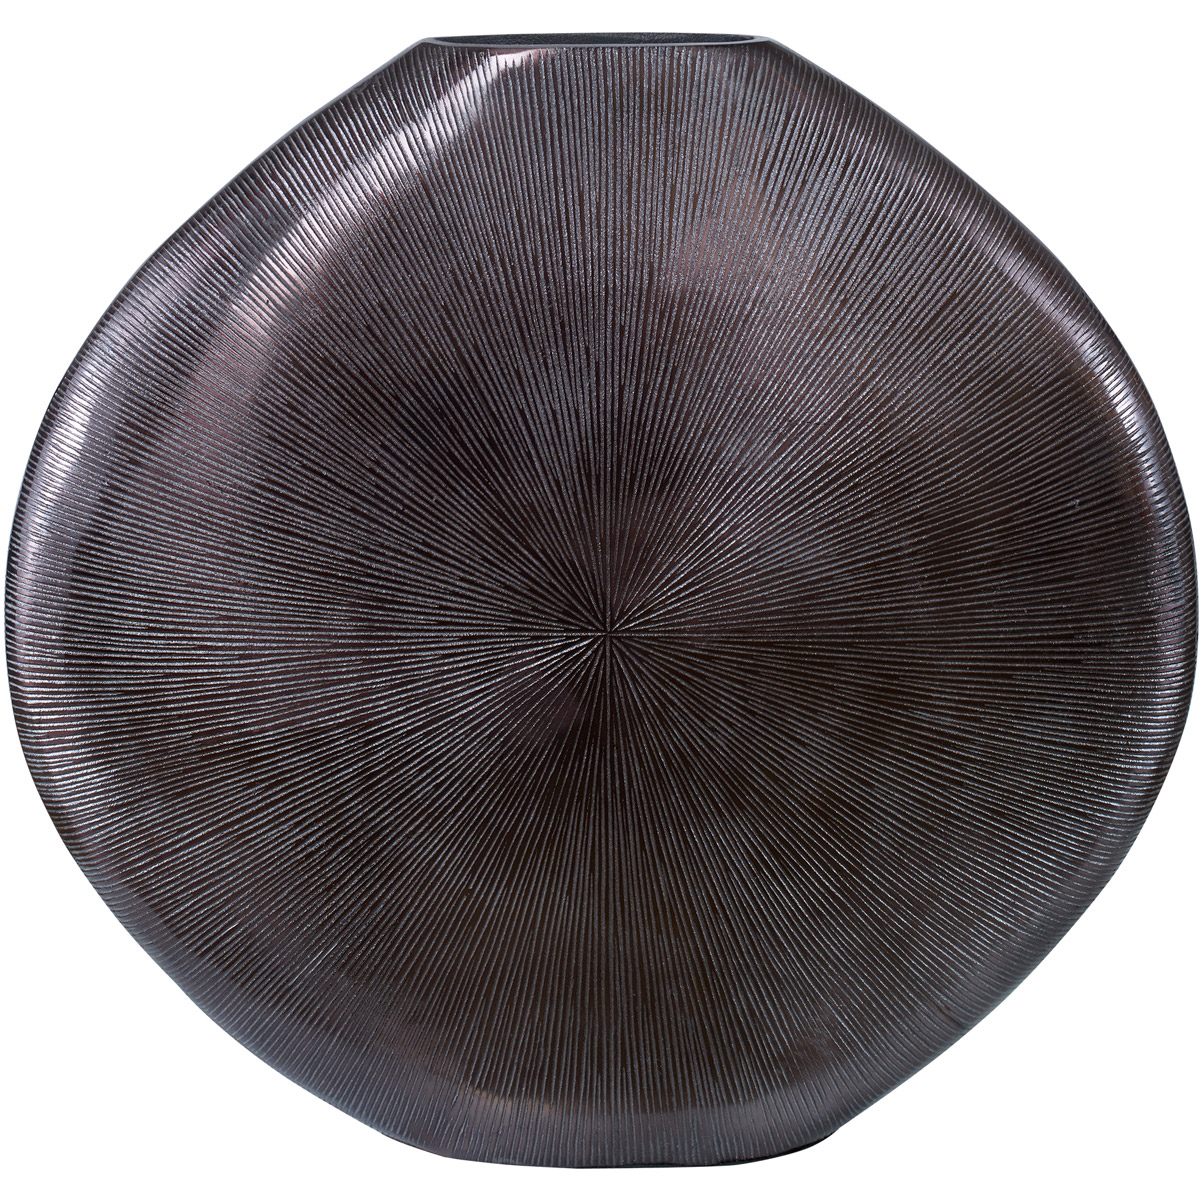 Picture of Uttermost 18001 Gretchen Vase, Black Nickel